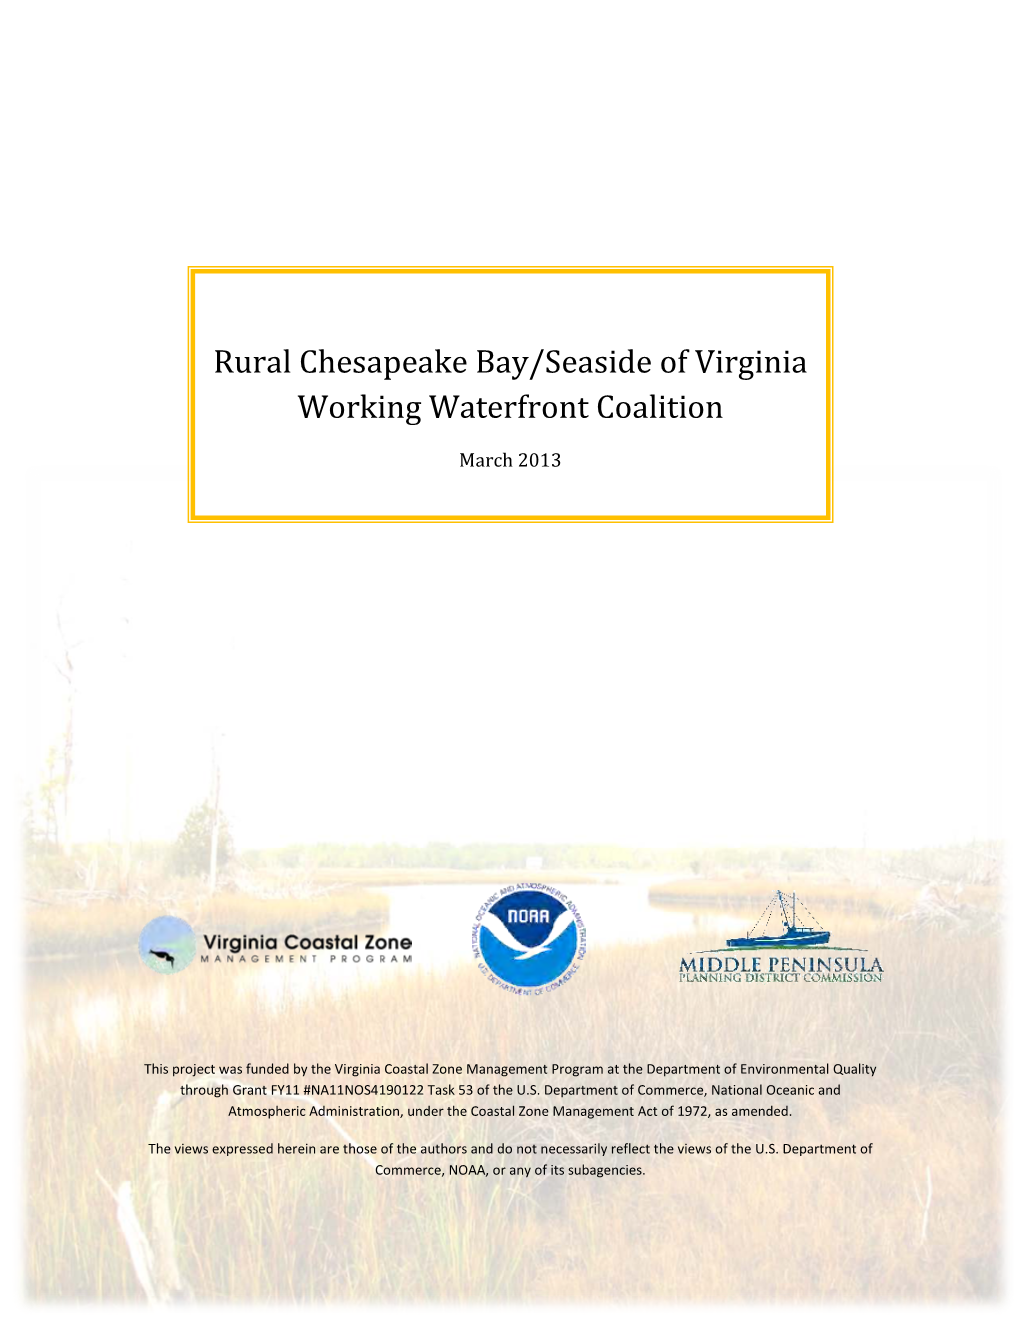 Rural Chesapeake Bay/Seaside of Virginia Working Waterfront